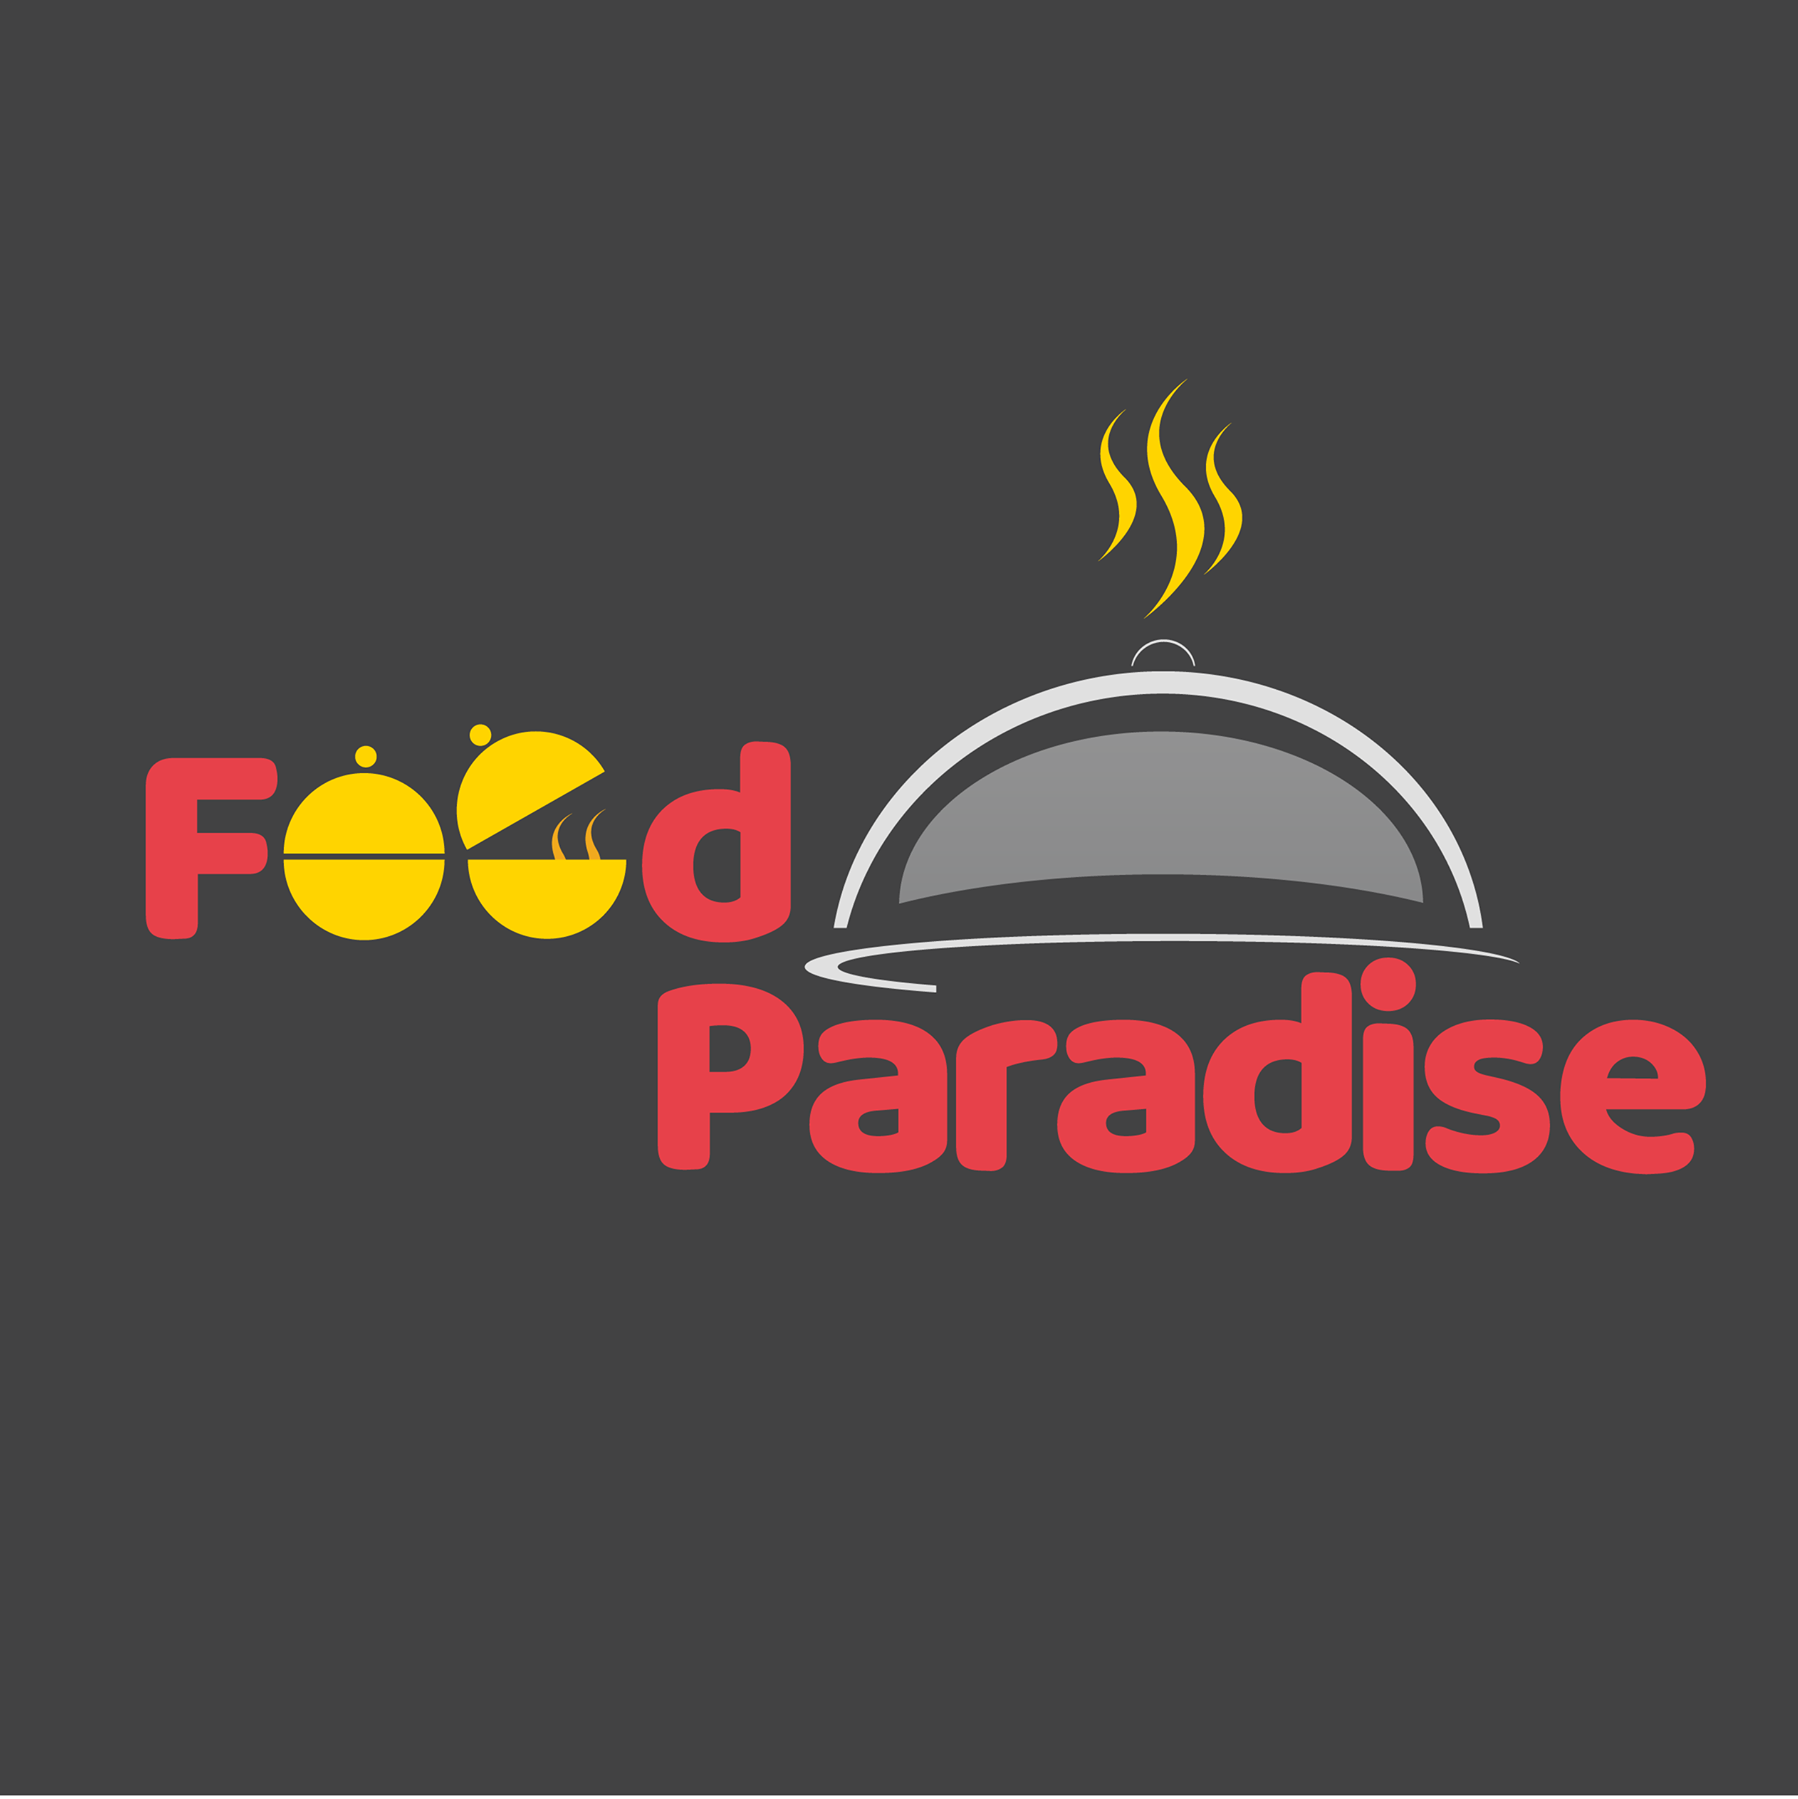 food parqadise